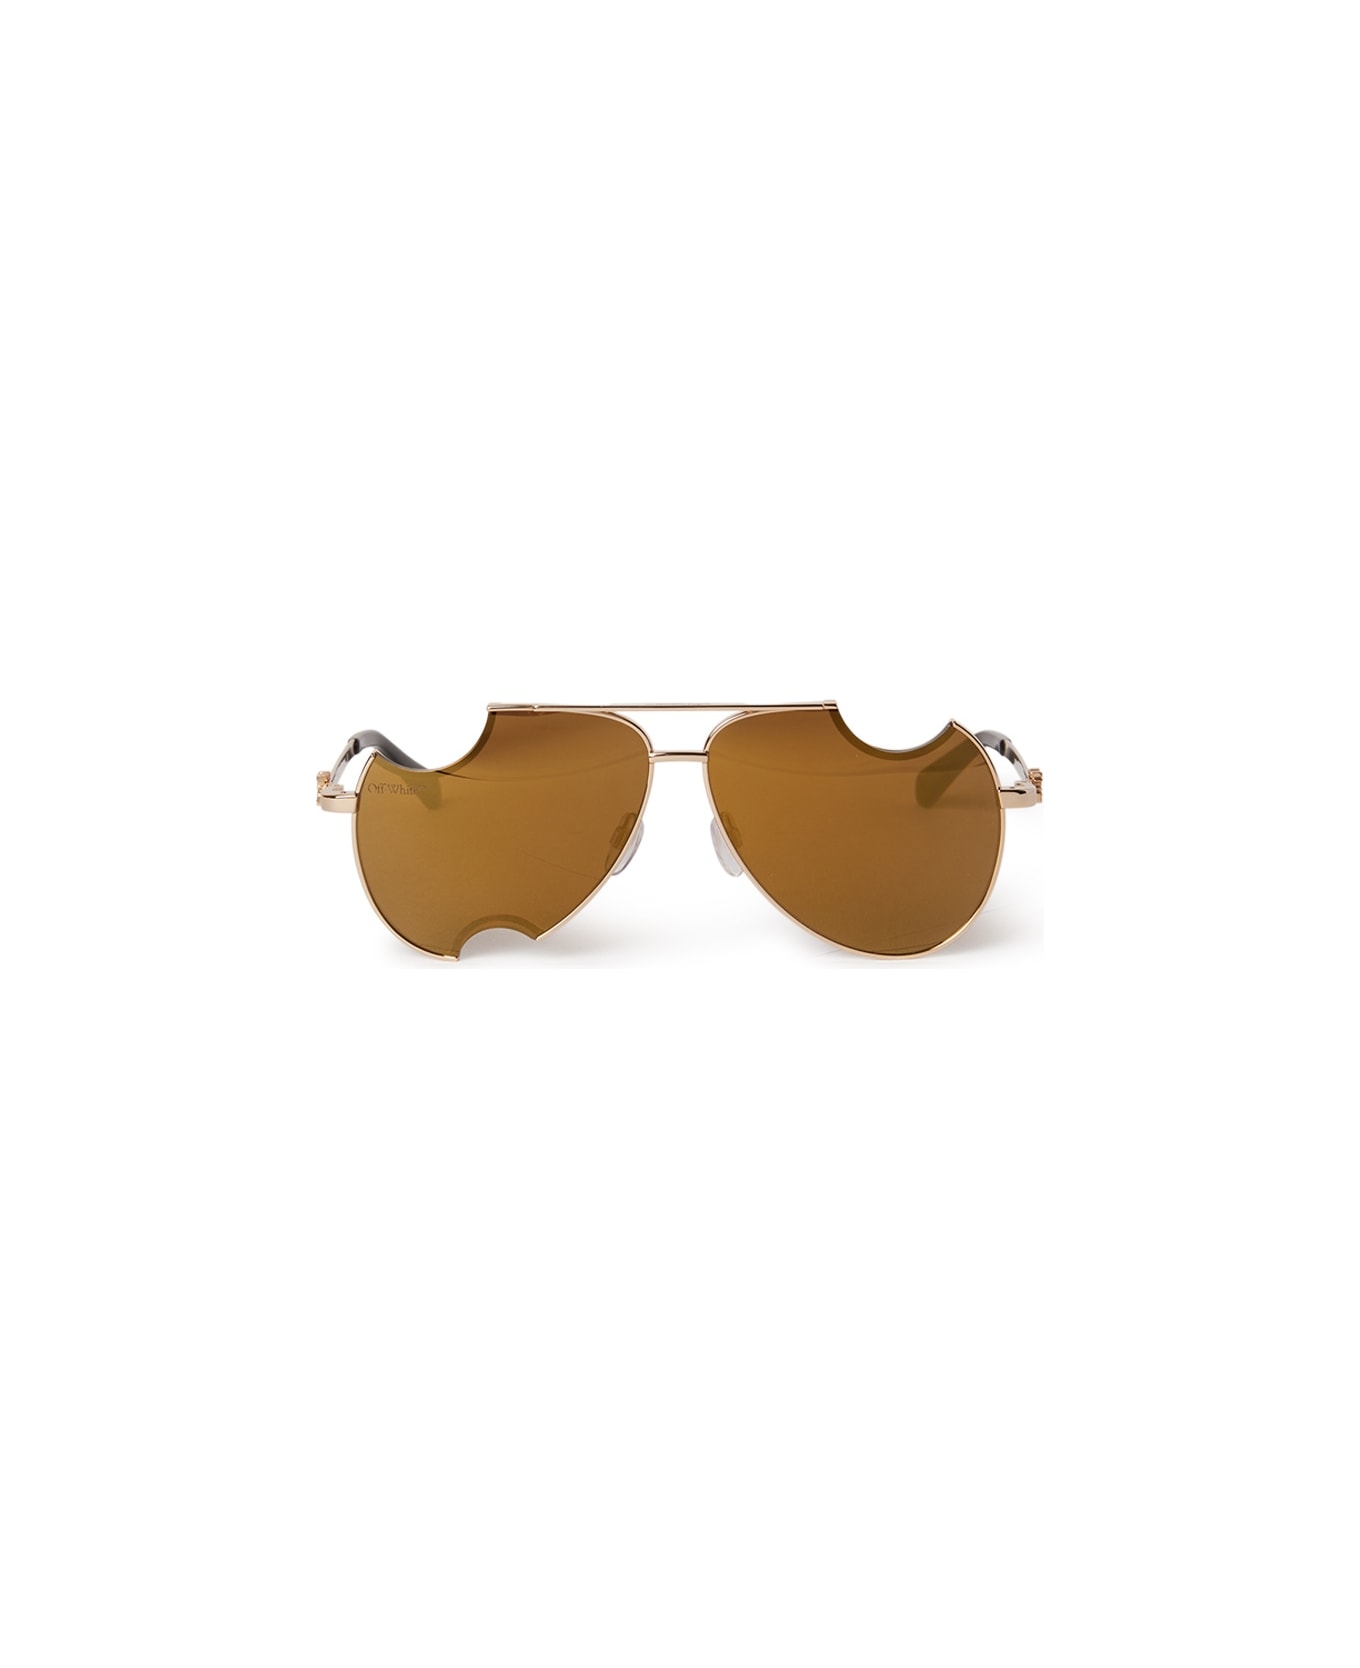 Off-White DALLAS SUNGLASSES Sunglasses - Gold Mirror